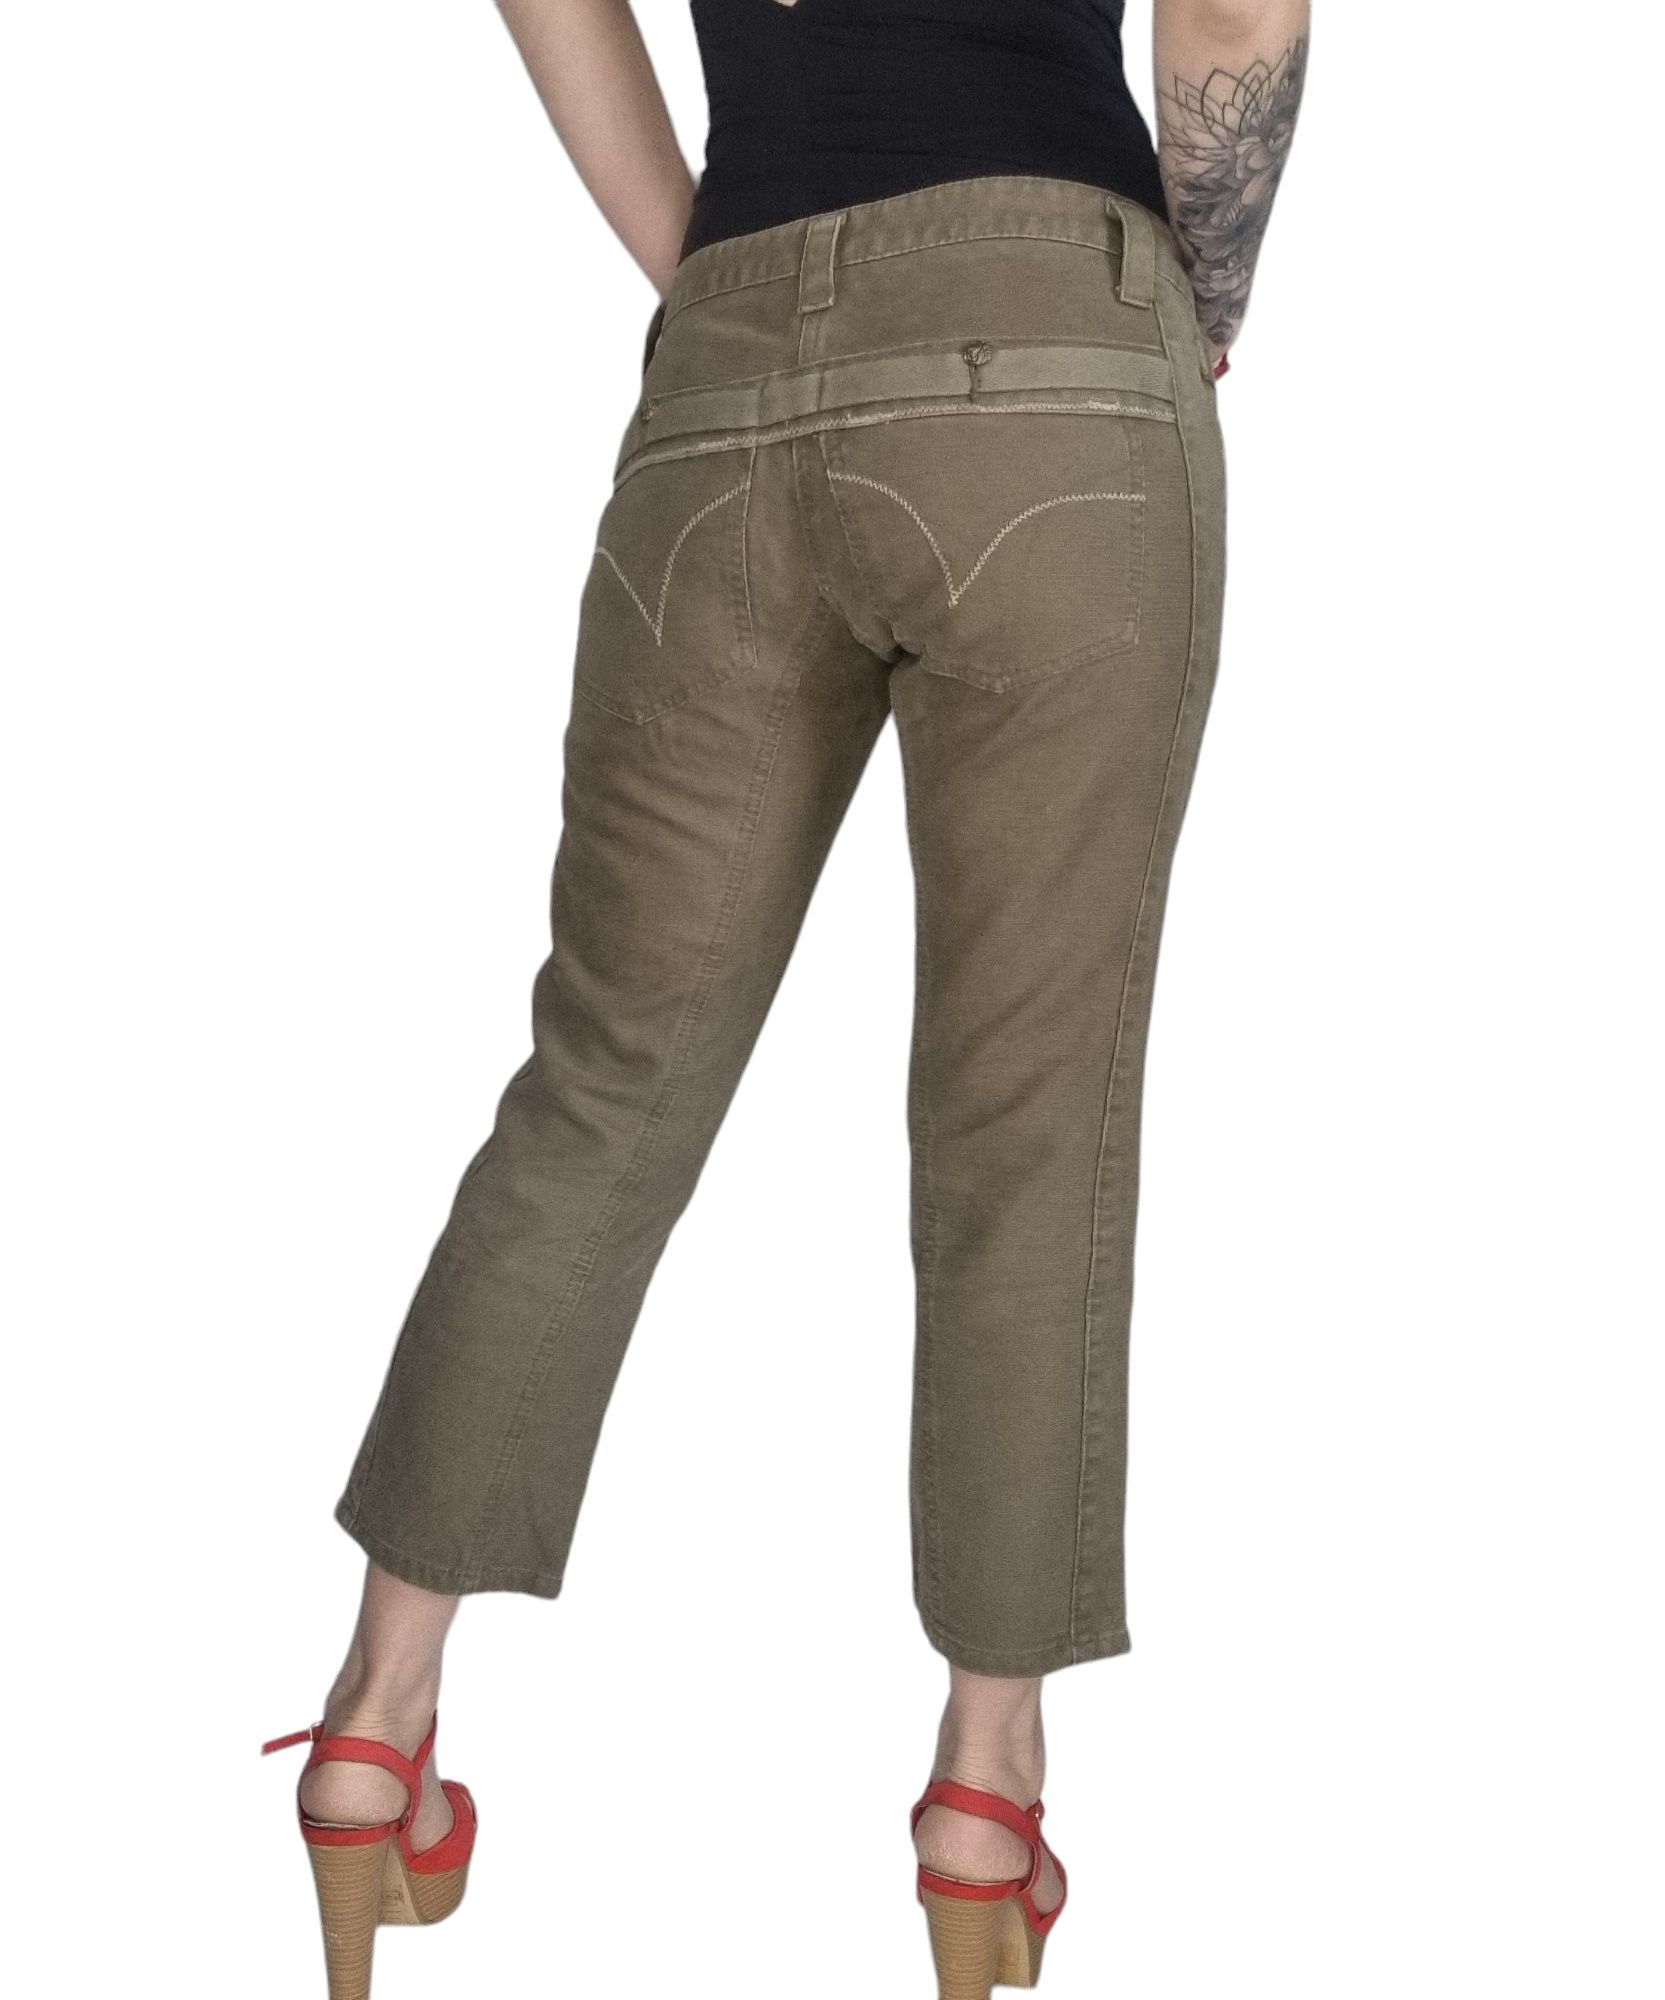 Spodnie khaki oliwkowe stefanel Rozmiar S 36